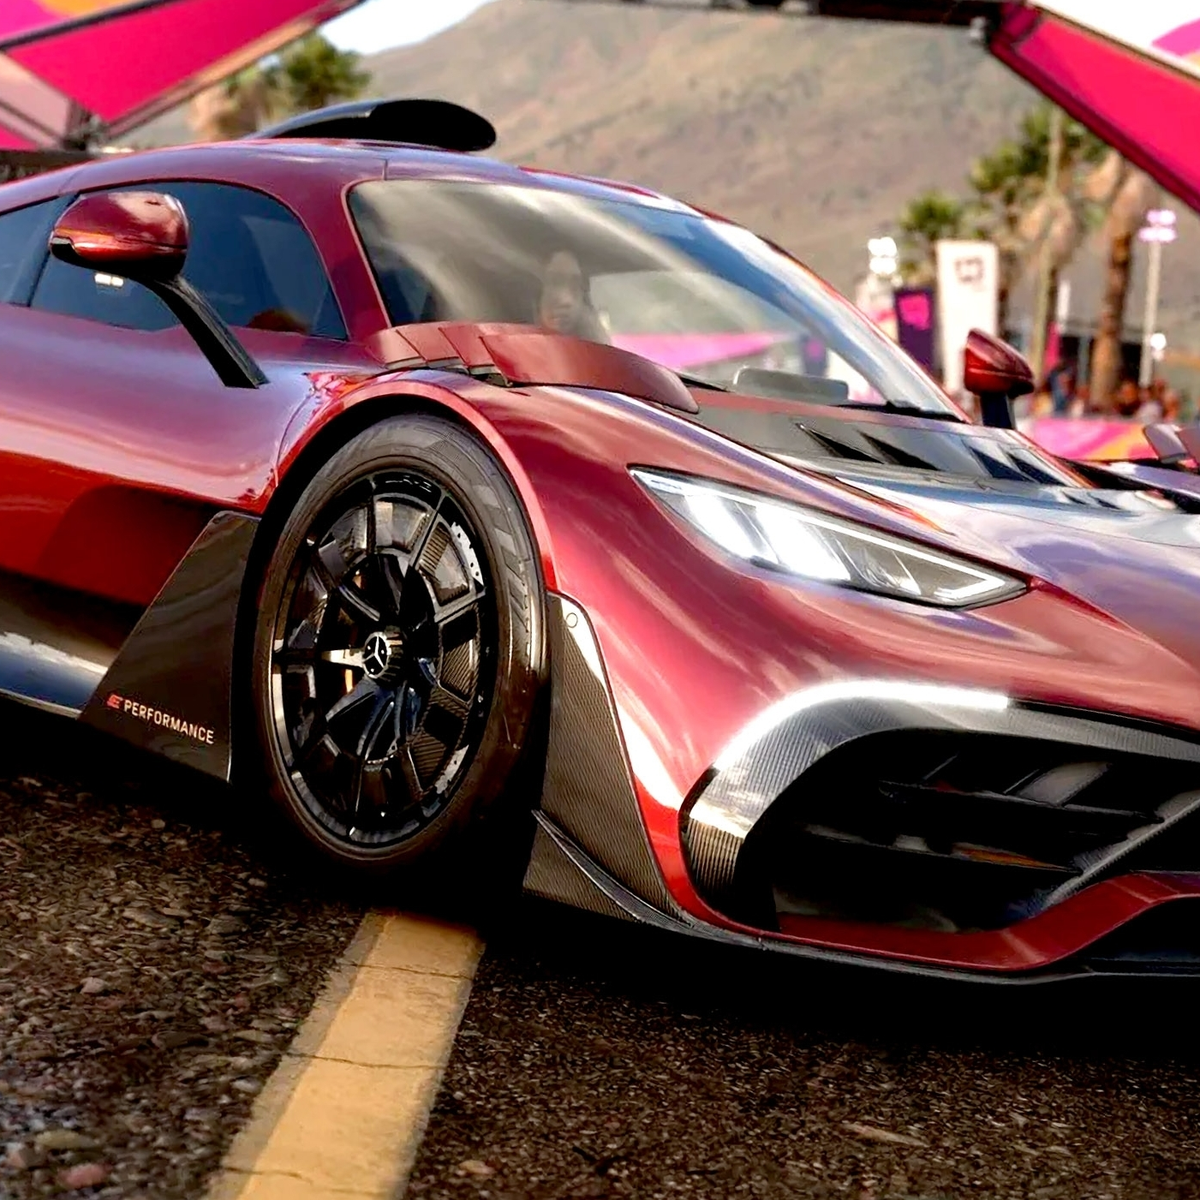 Forza Horizon 5: Saiba tudo sobre um dos melhores jogos de corrida